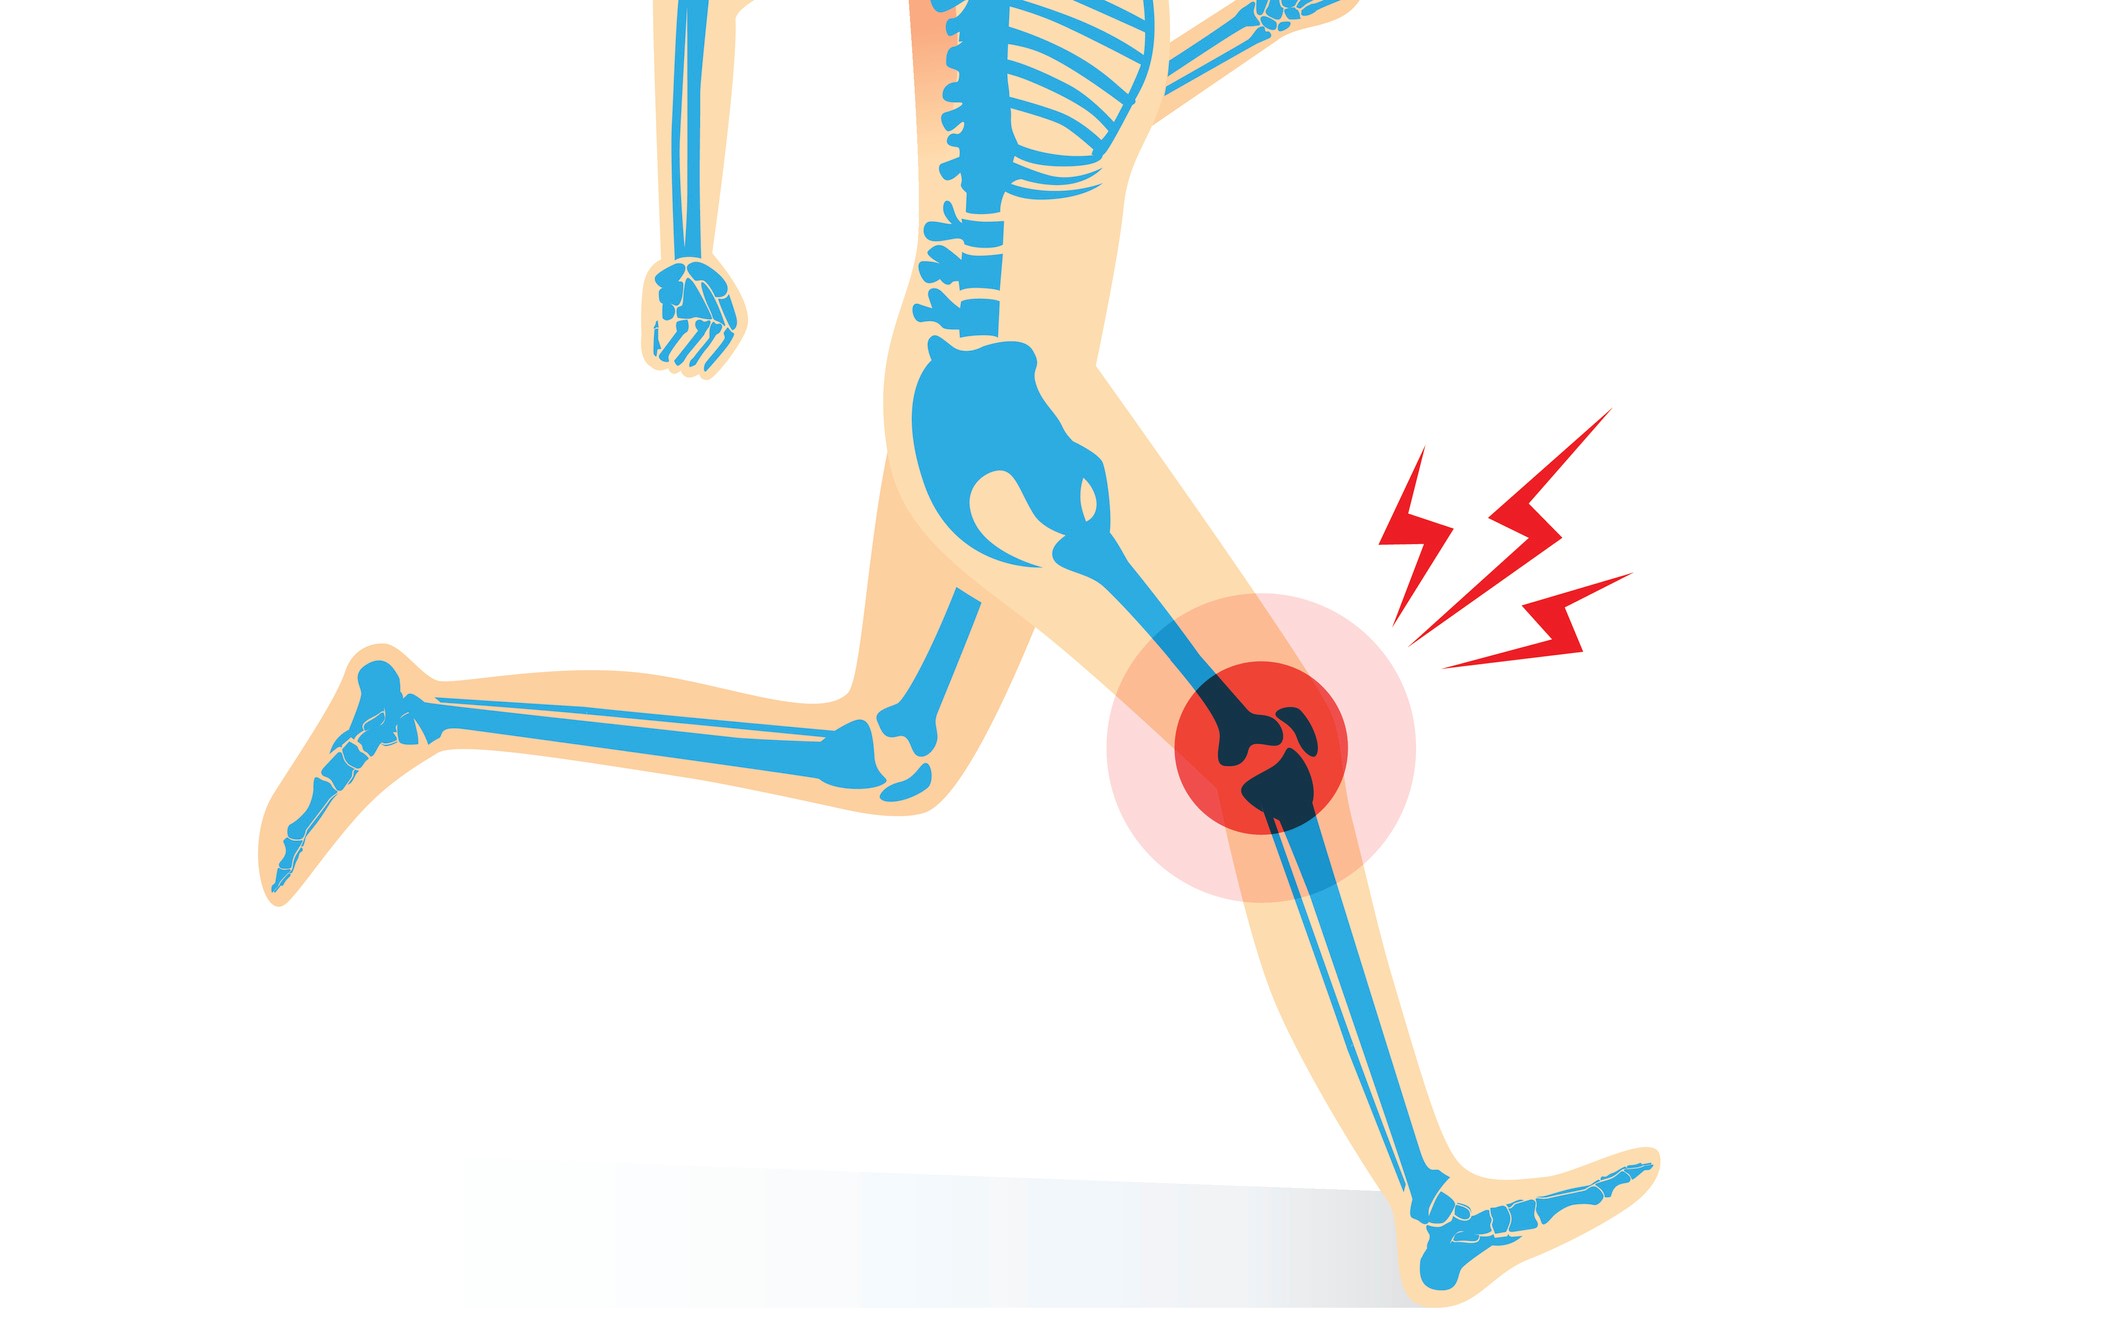 ランナー膝 足裏の痛み 捻挫 ランニングで起こりやすいケガと予防対策 健康 スポーツ Melos